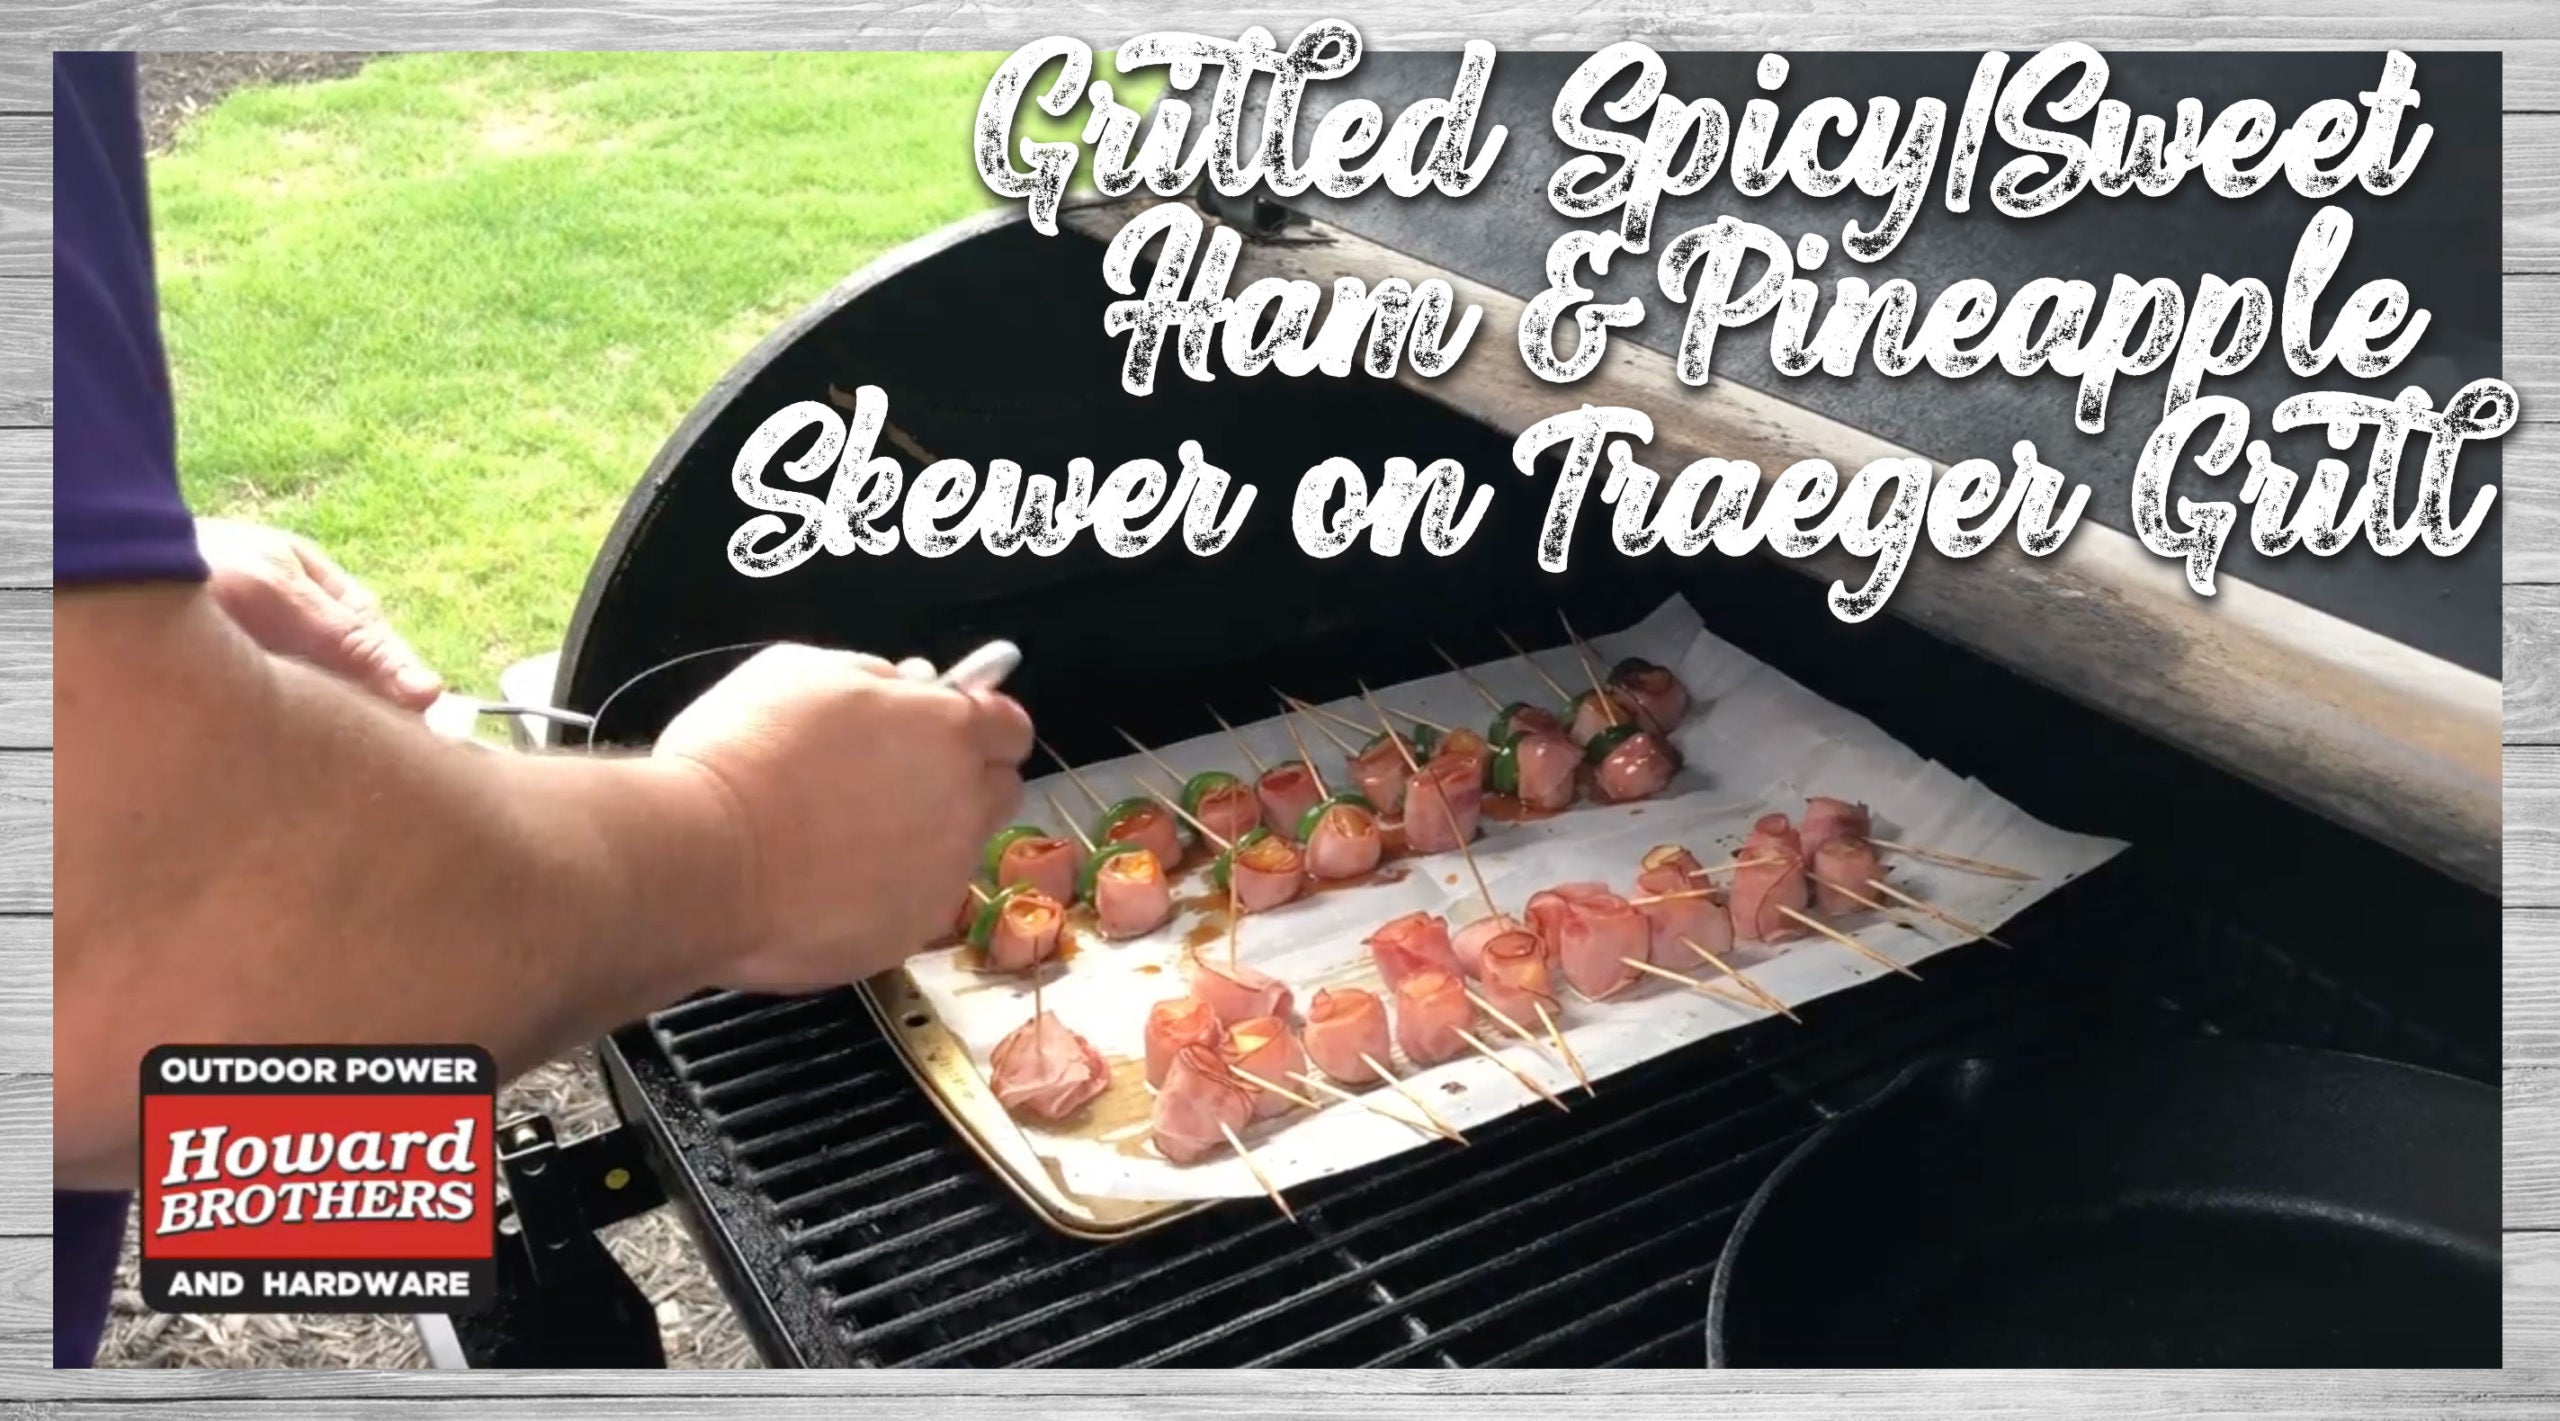 Traeger Cook - Grilled Spicy/Sweet Ham & Pineapple Skewer